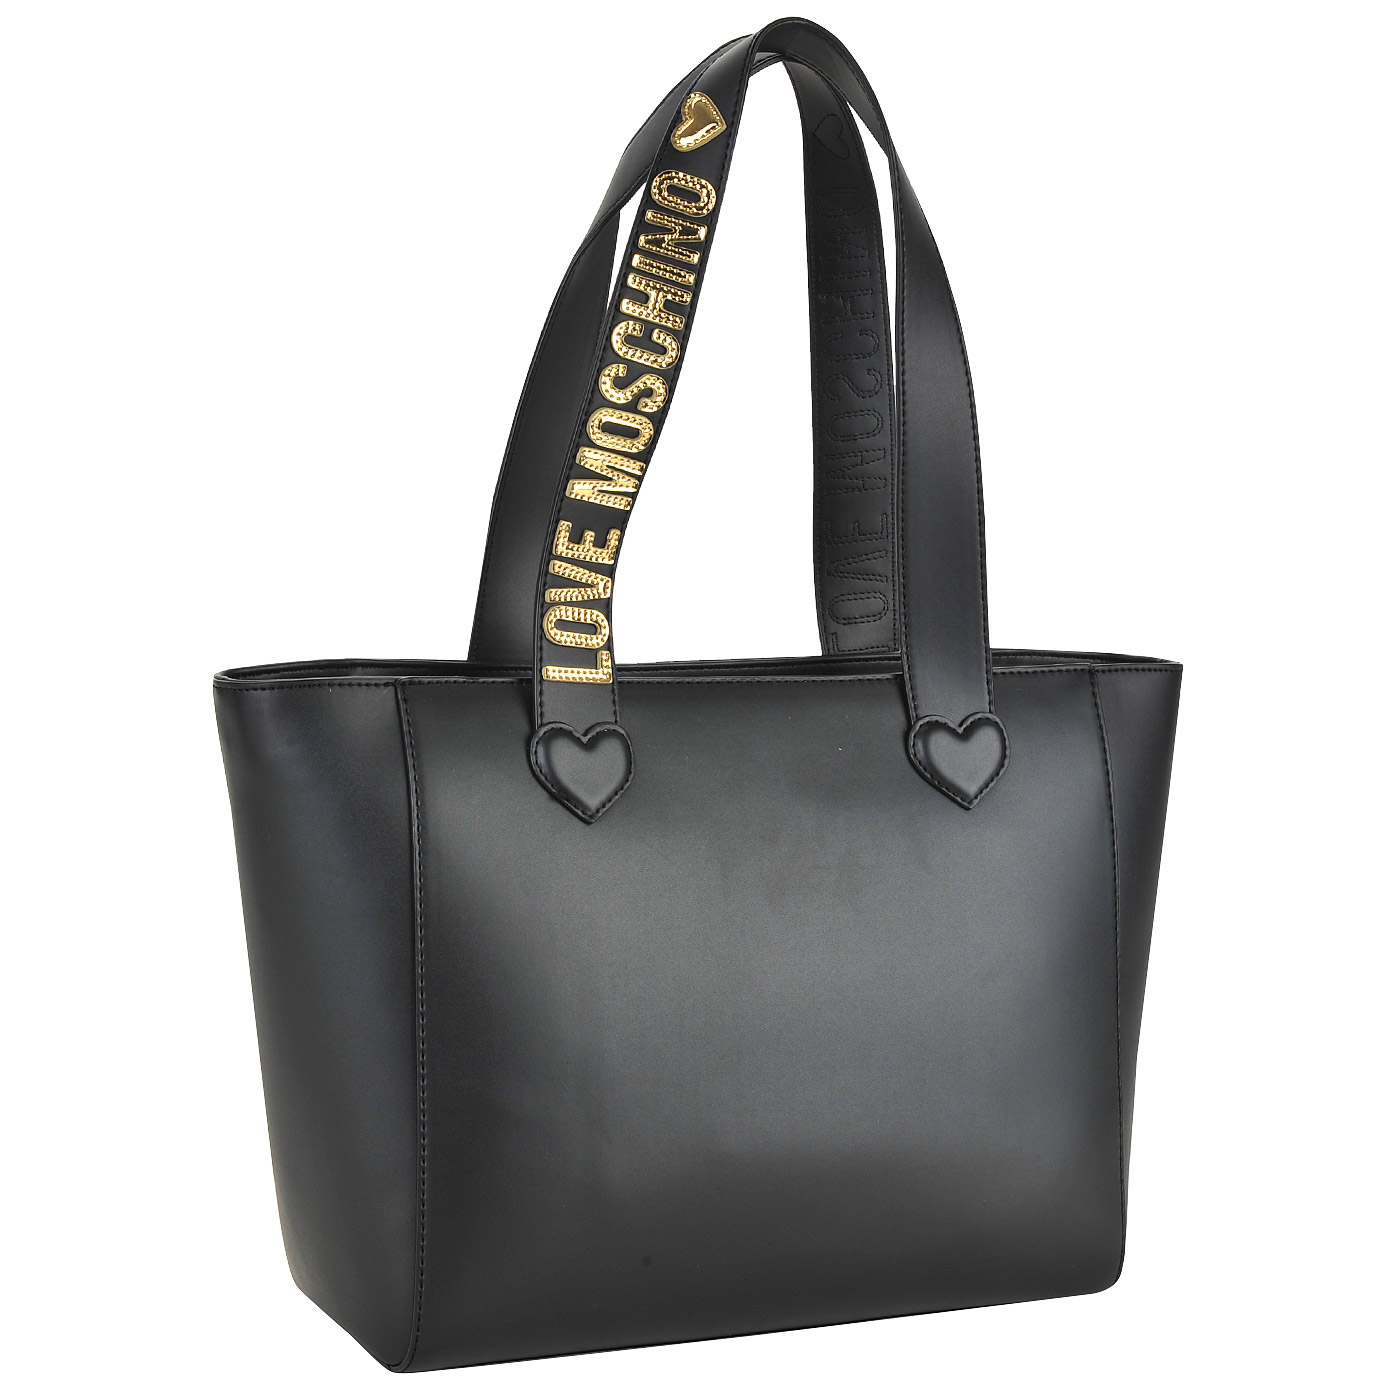 Вместительная черная сумка с длинными ручками и с золотой аппликацией Love Moschino Gold heart